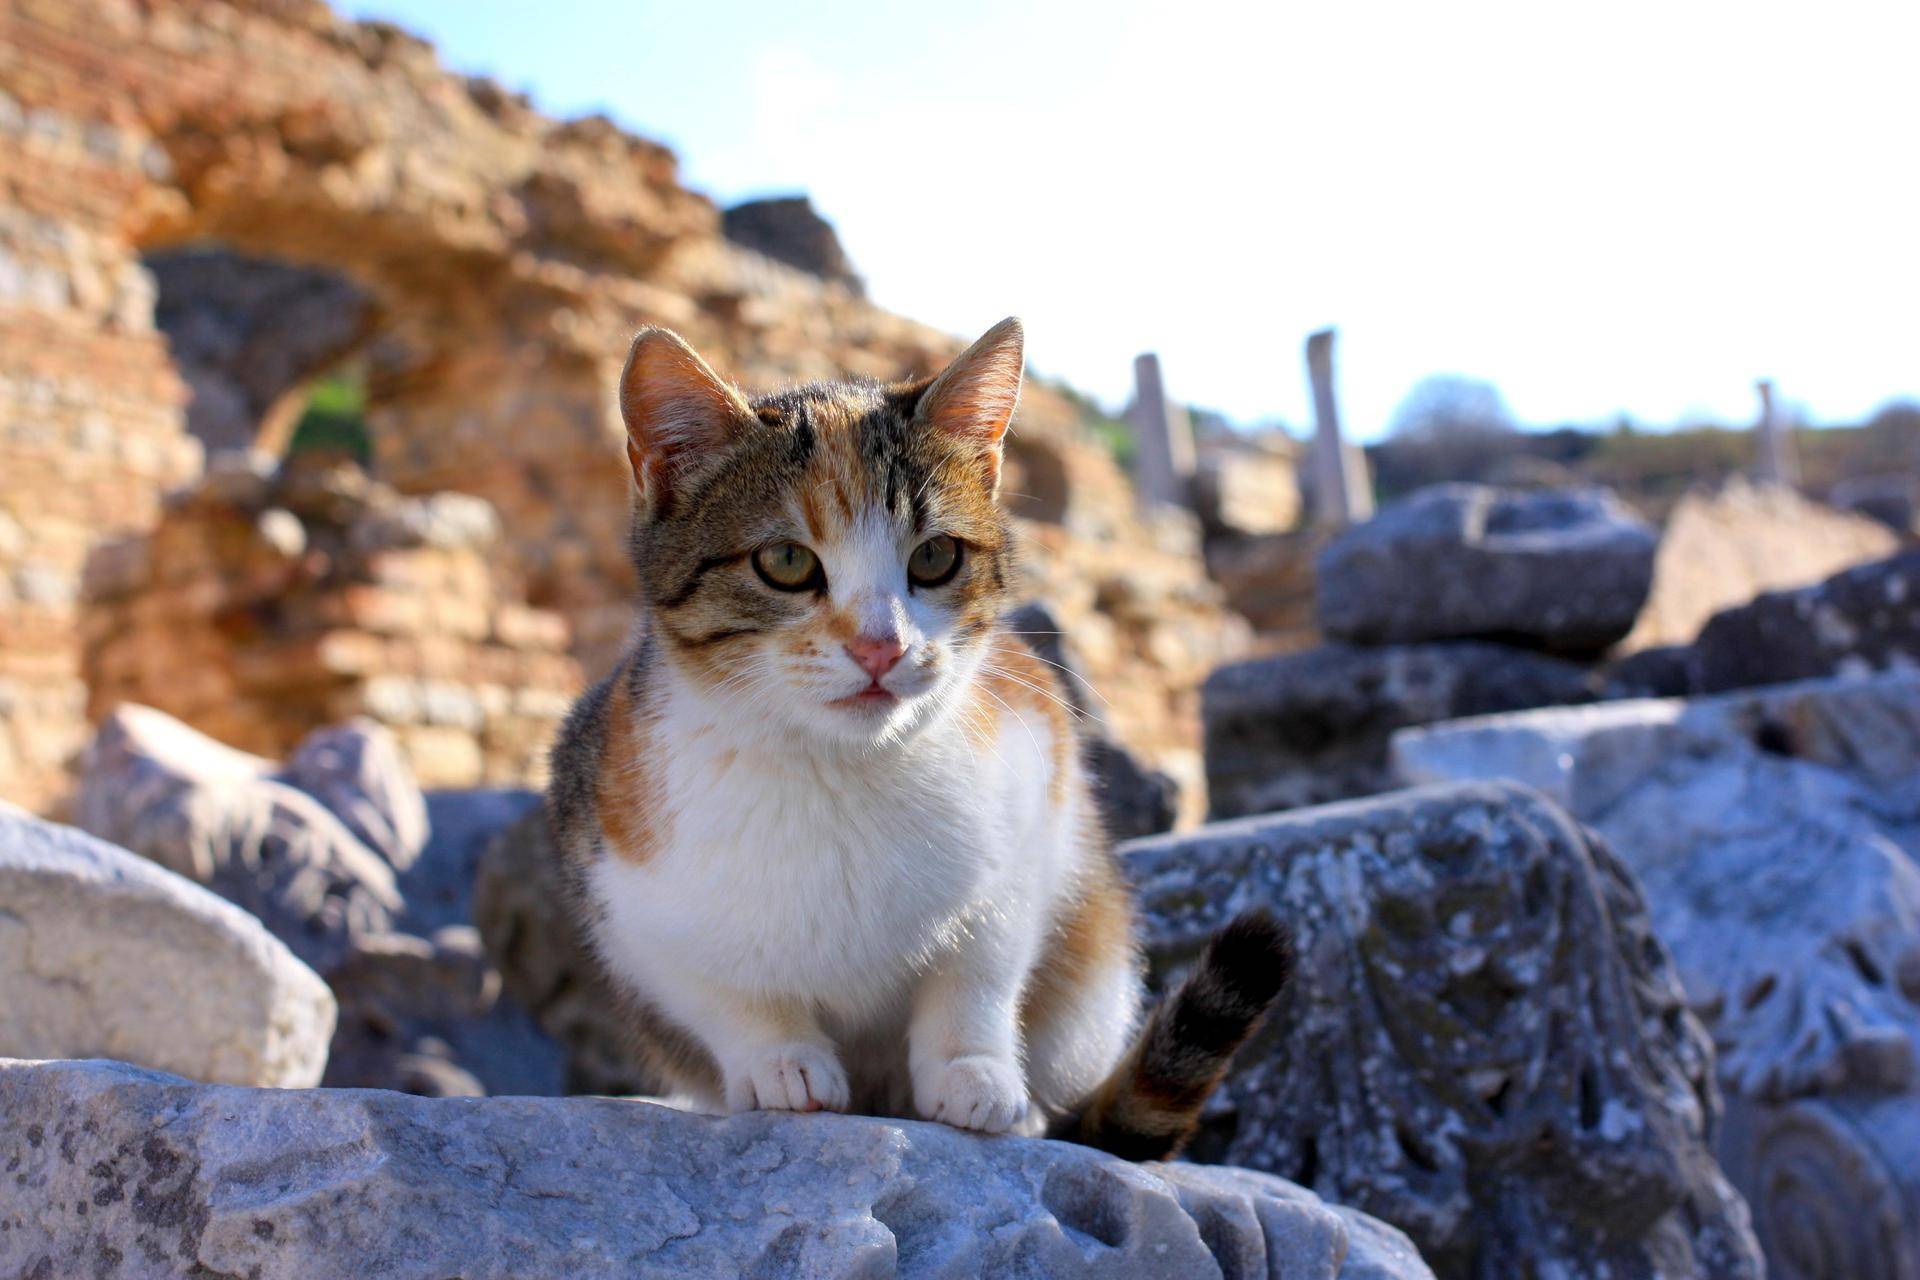 Эгейская кошка. фотографии эгейской кошки, видео эгейской породы кошек. характер эгейской кошки, размер, вес и здоровье эгейской кошки